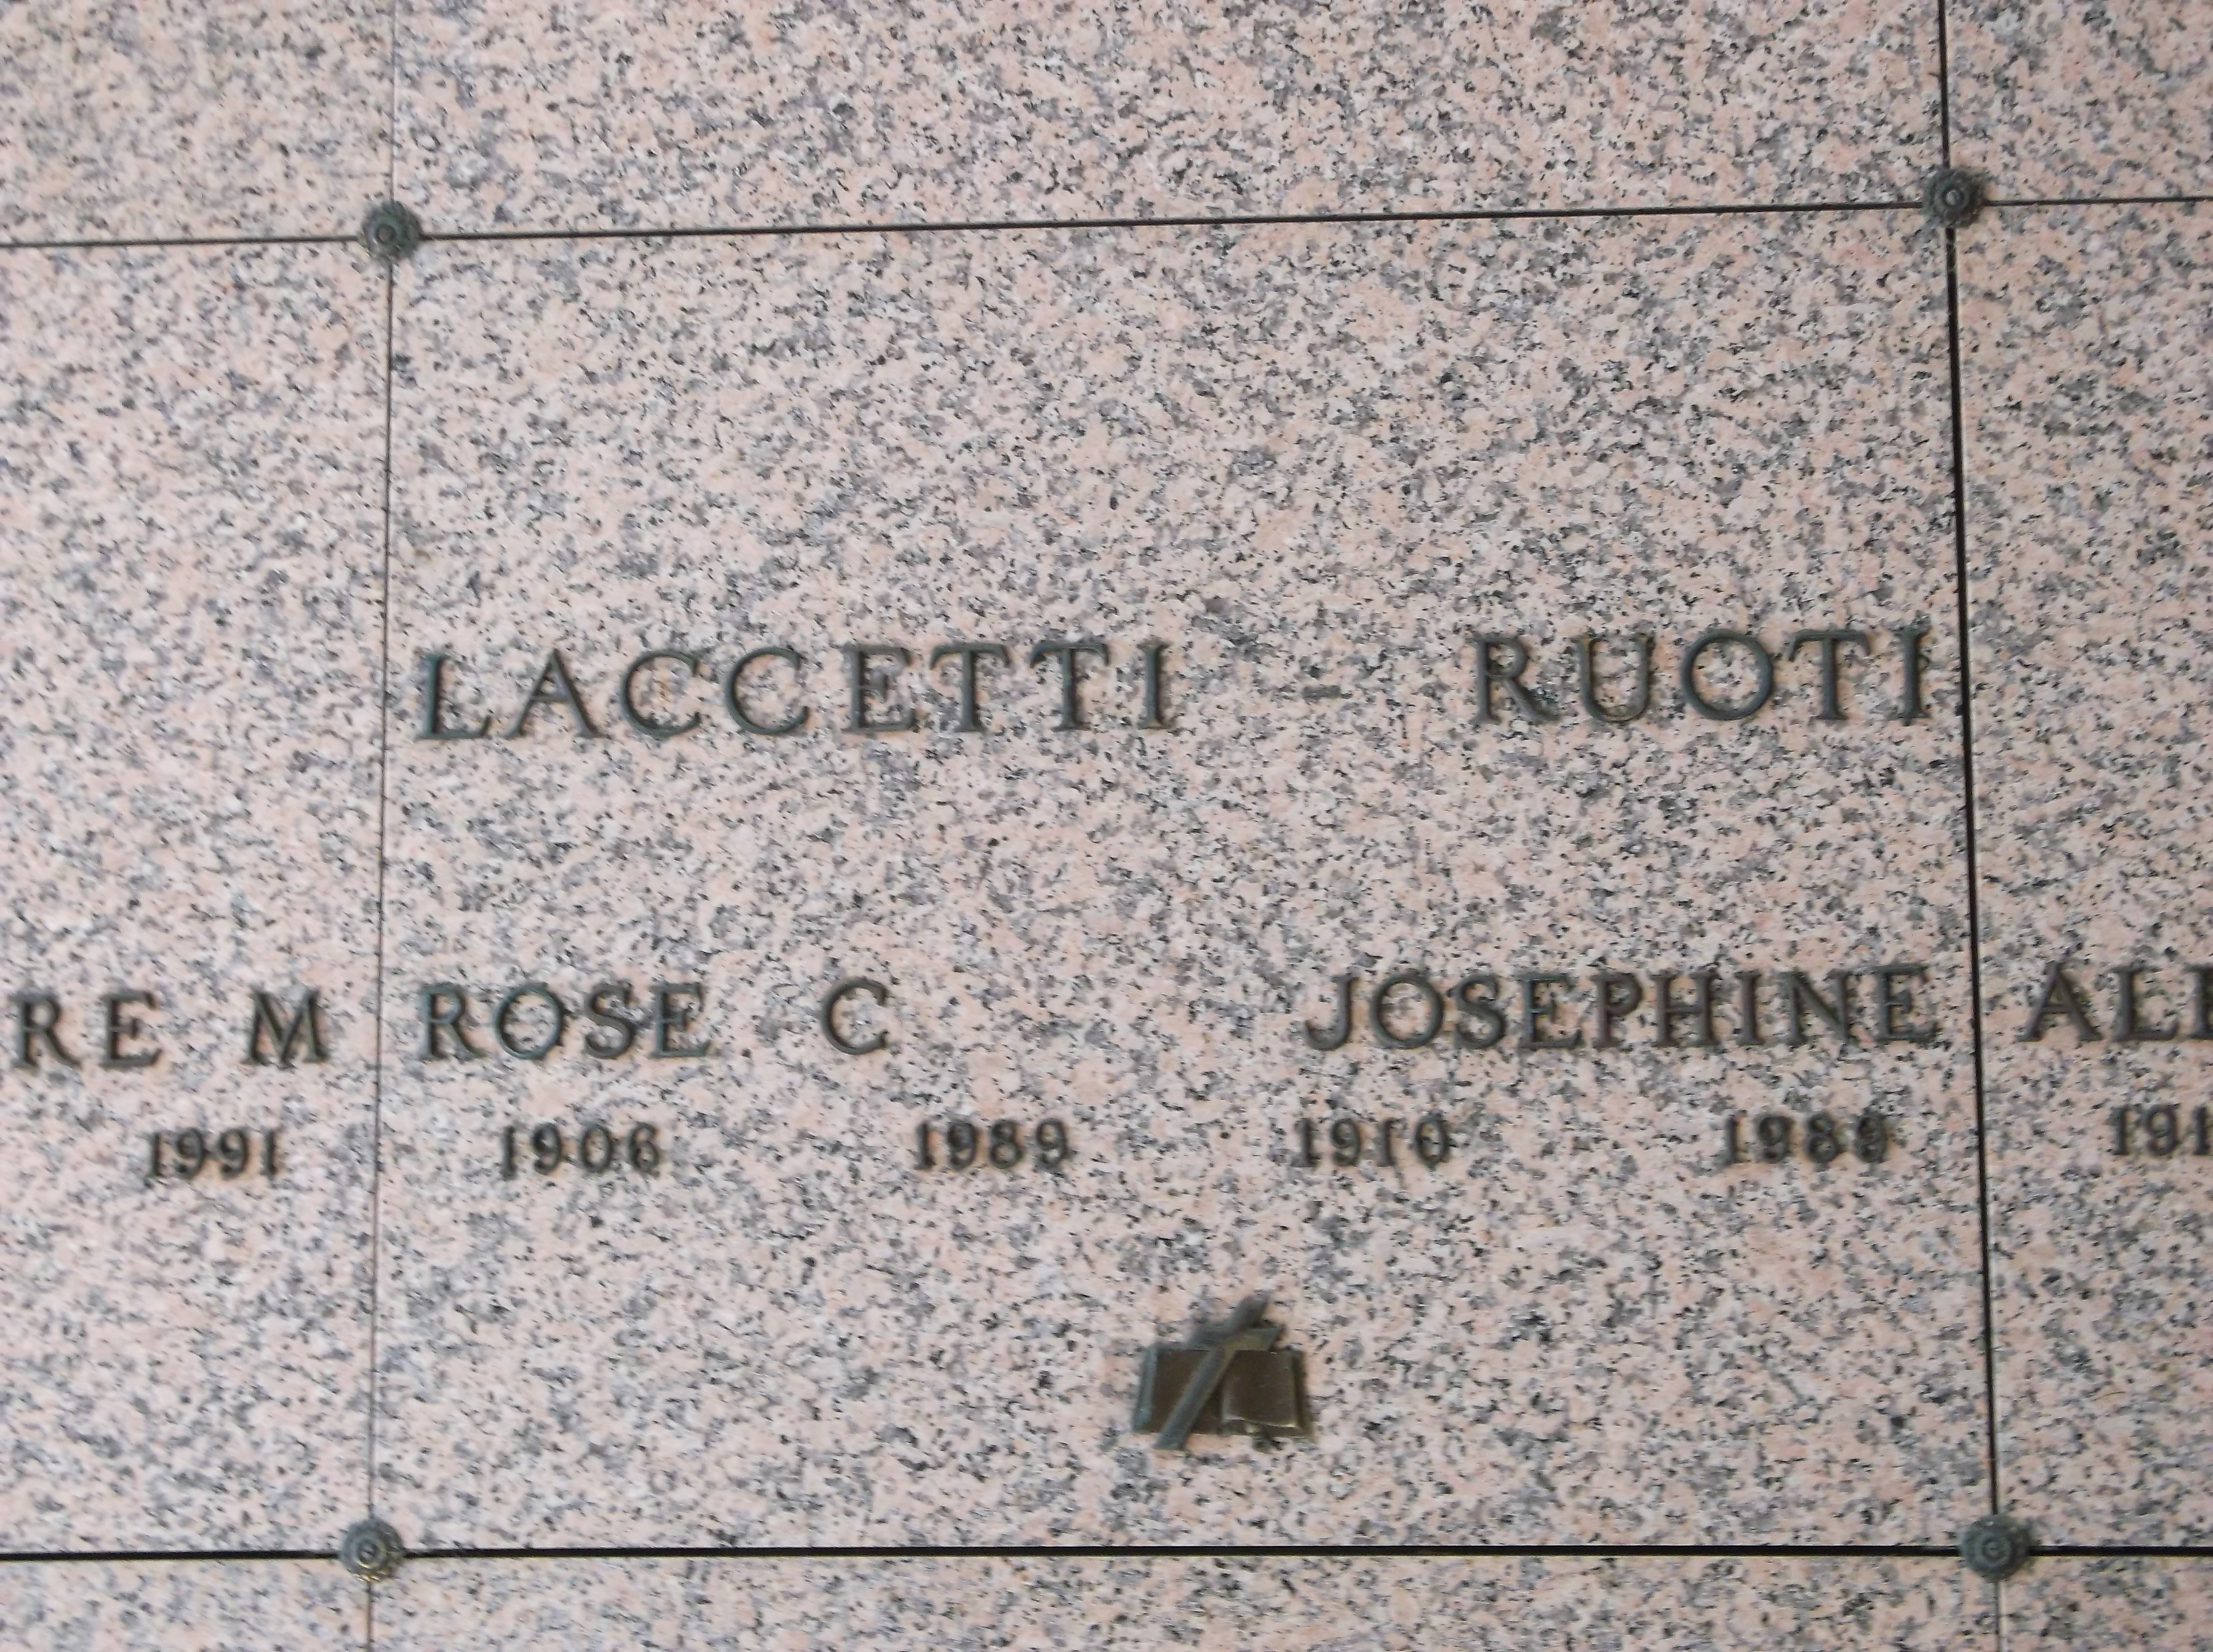 Josephine Ruoti